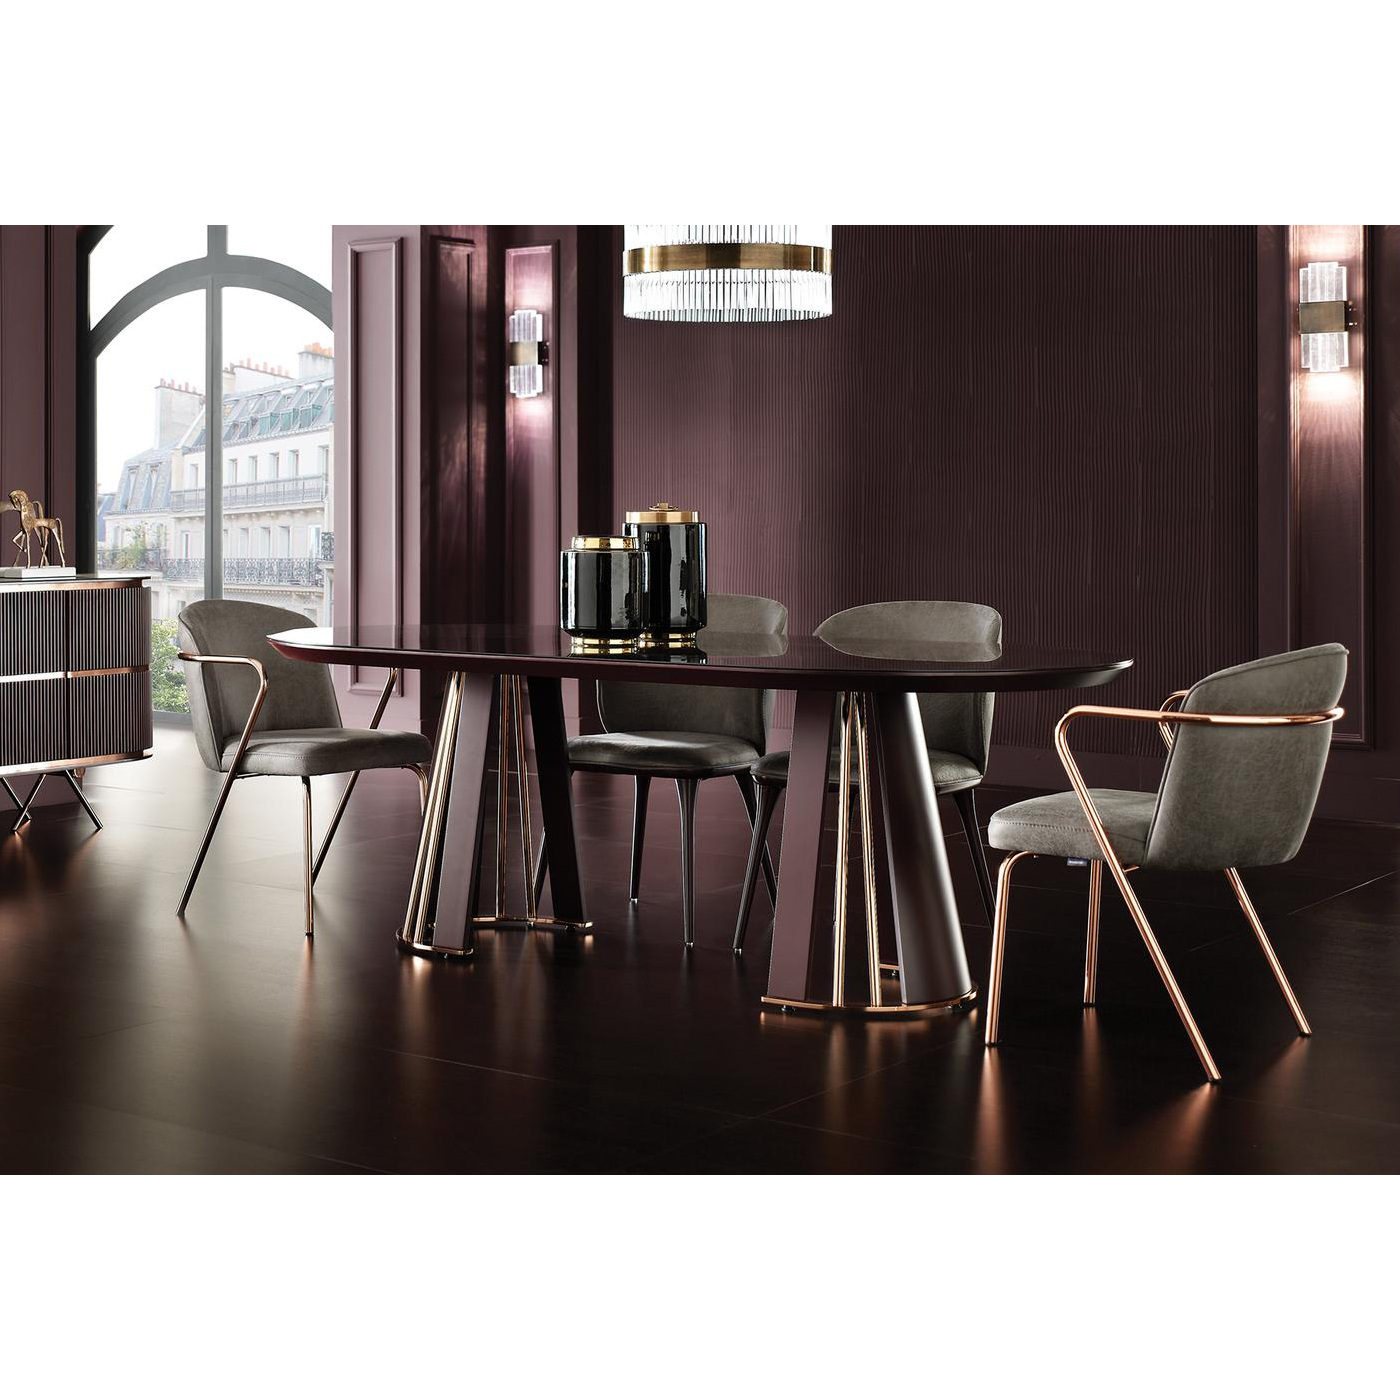 Стол обеденный Enza Home Vienna, овальный, размер 220х110х76 см, цвет бордовый, стеклянная поверхность07.182.0551.1213.0000.0226.